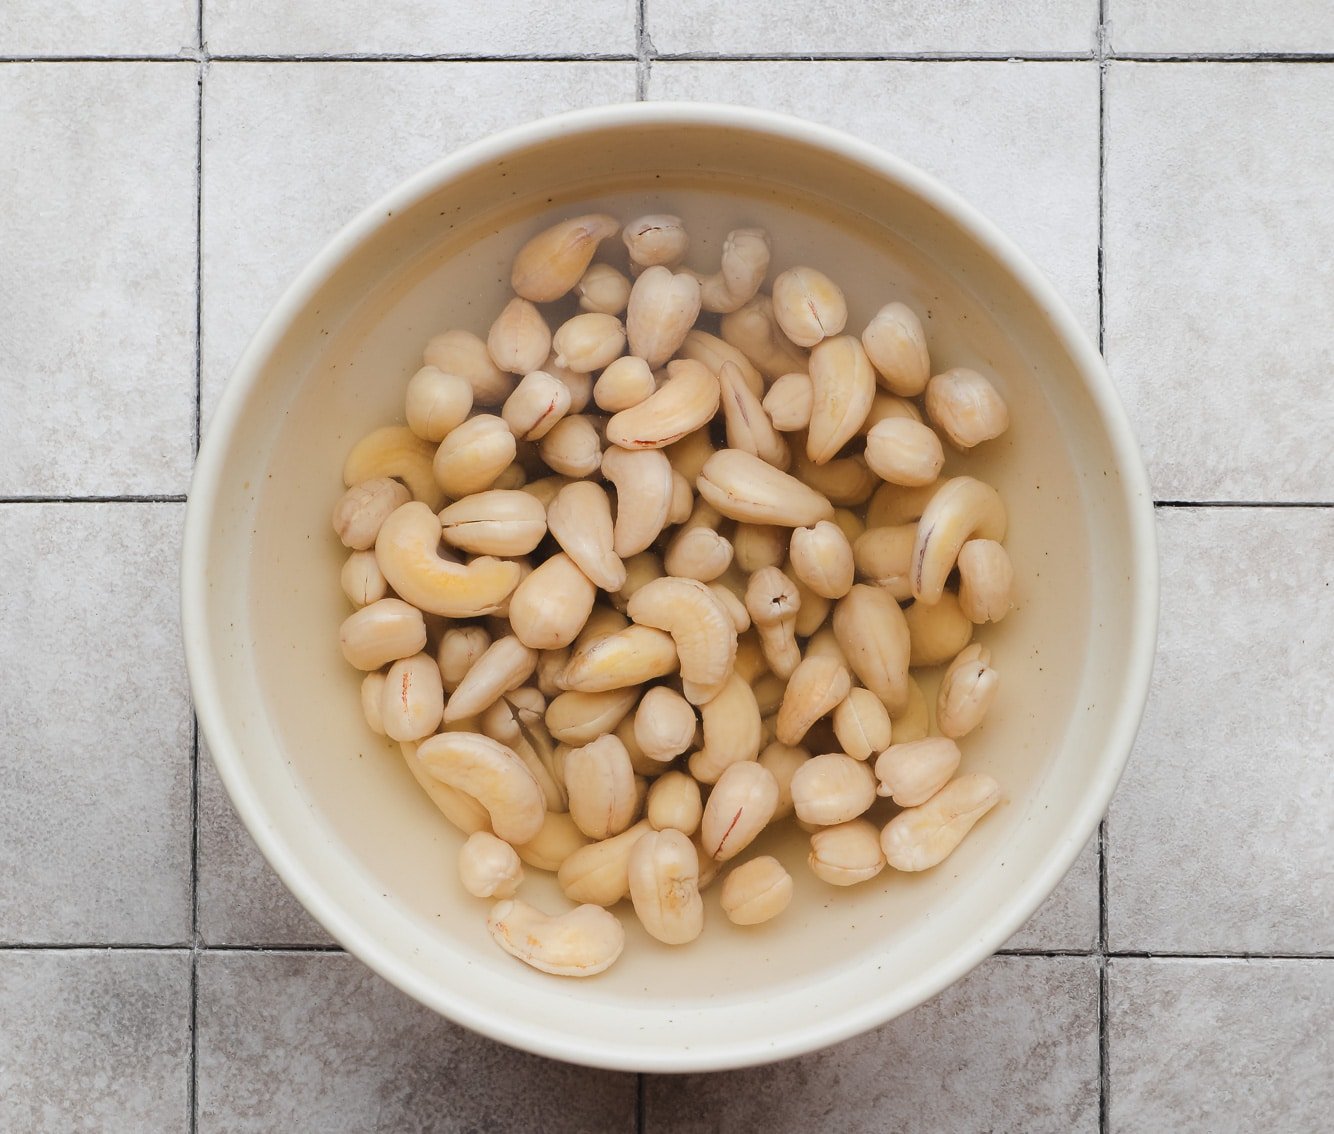 soaking cashews in water in a beige bowl.